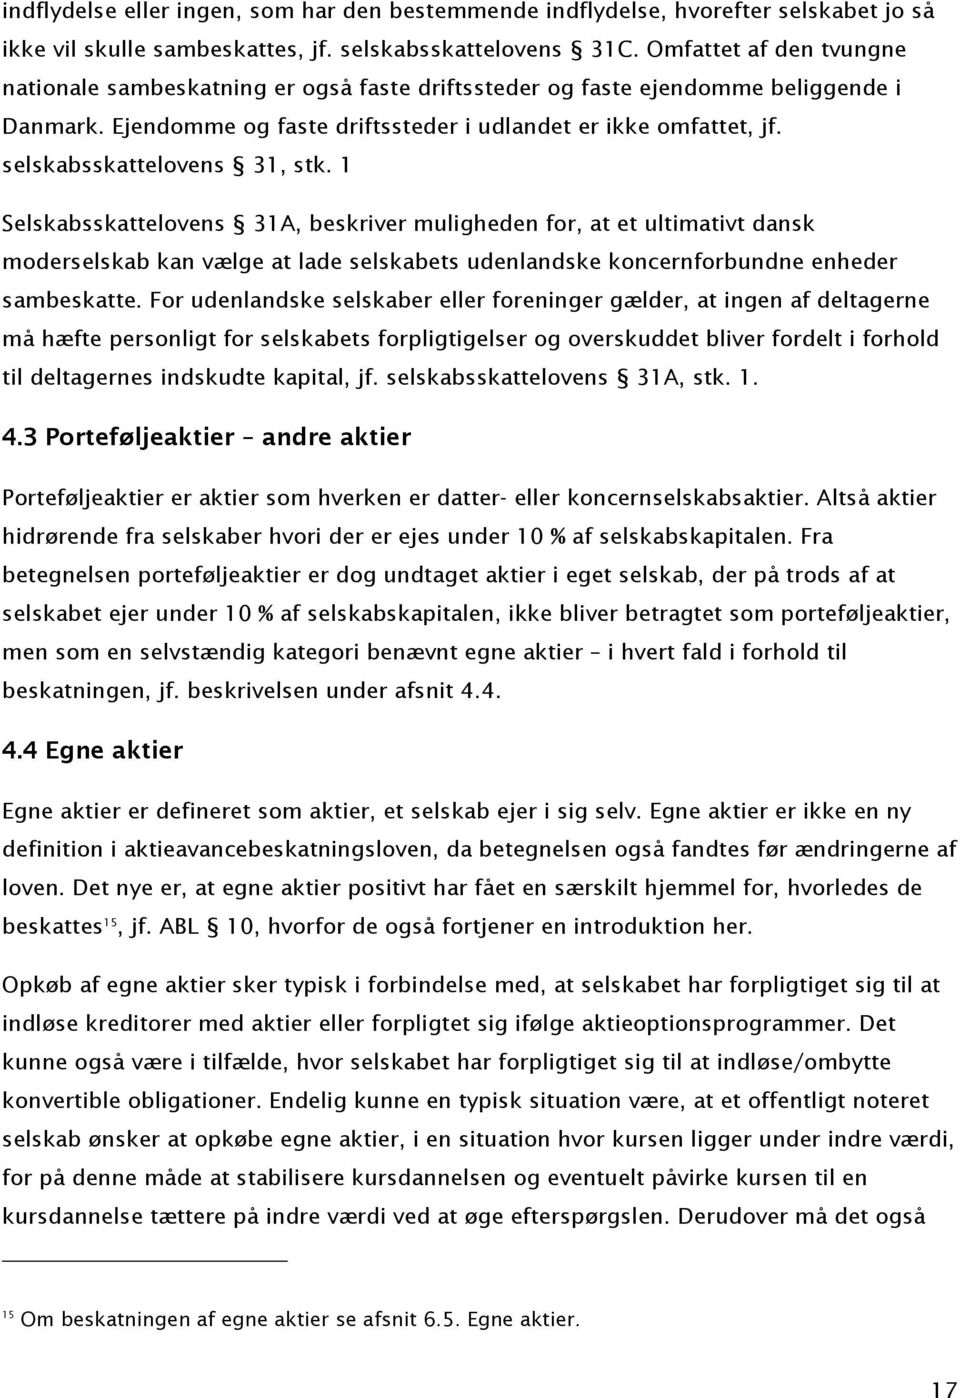 selskabsskattelovens 31, stk. 1 Selskabsskattelovens 31A, beskriver muligheden for, at et ultimativt dansk moderselskab kan vælge at lade selskabets udenlandske koncernforbundne enheder sambeskatte.